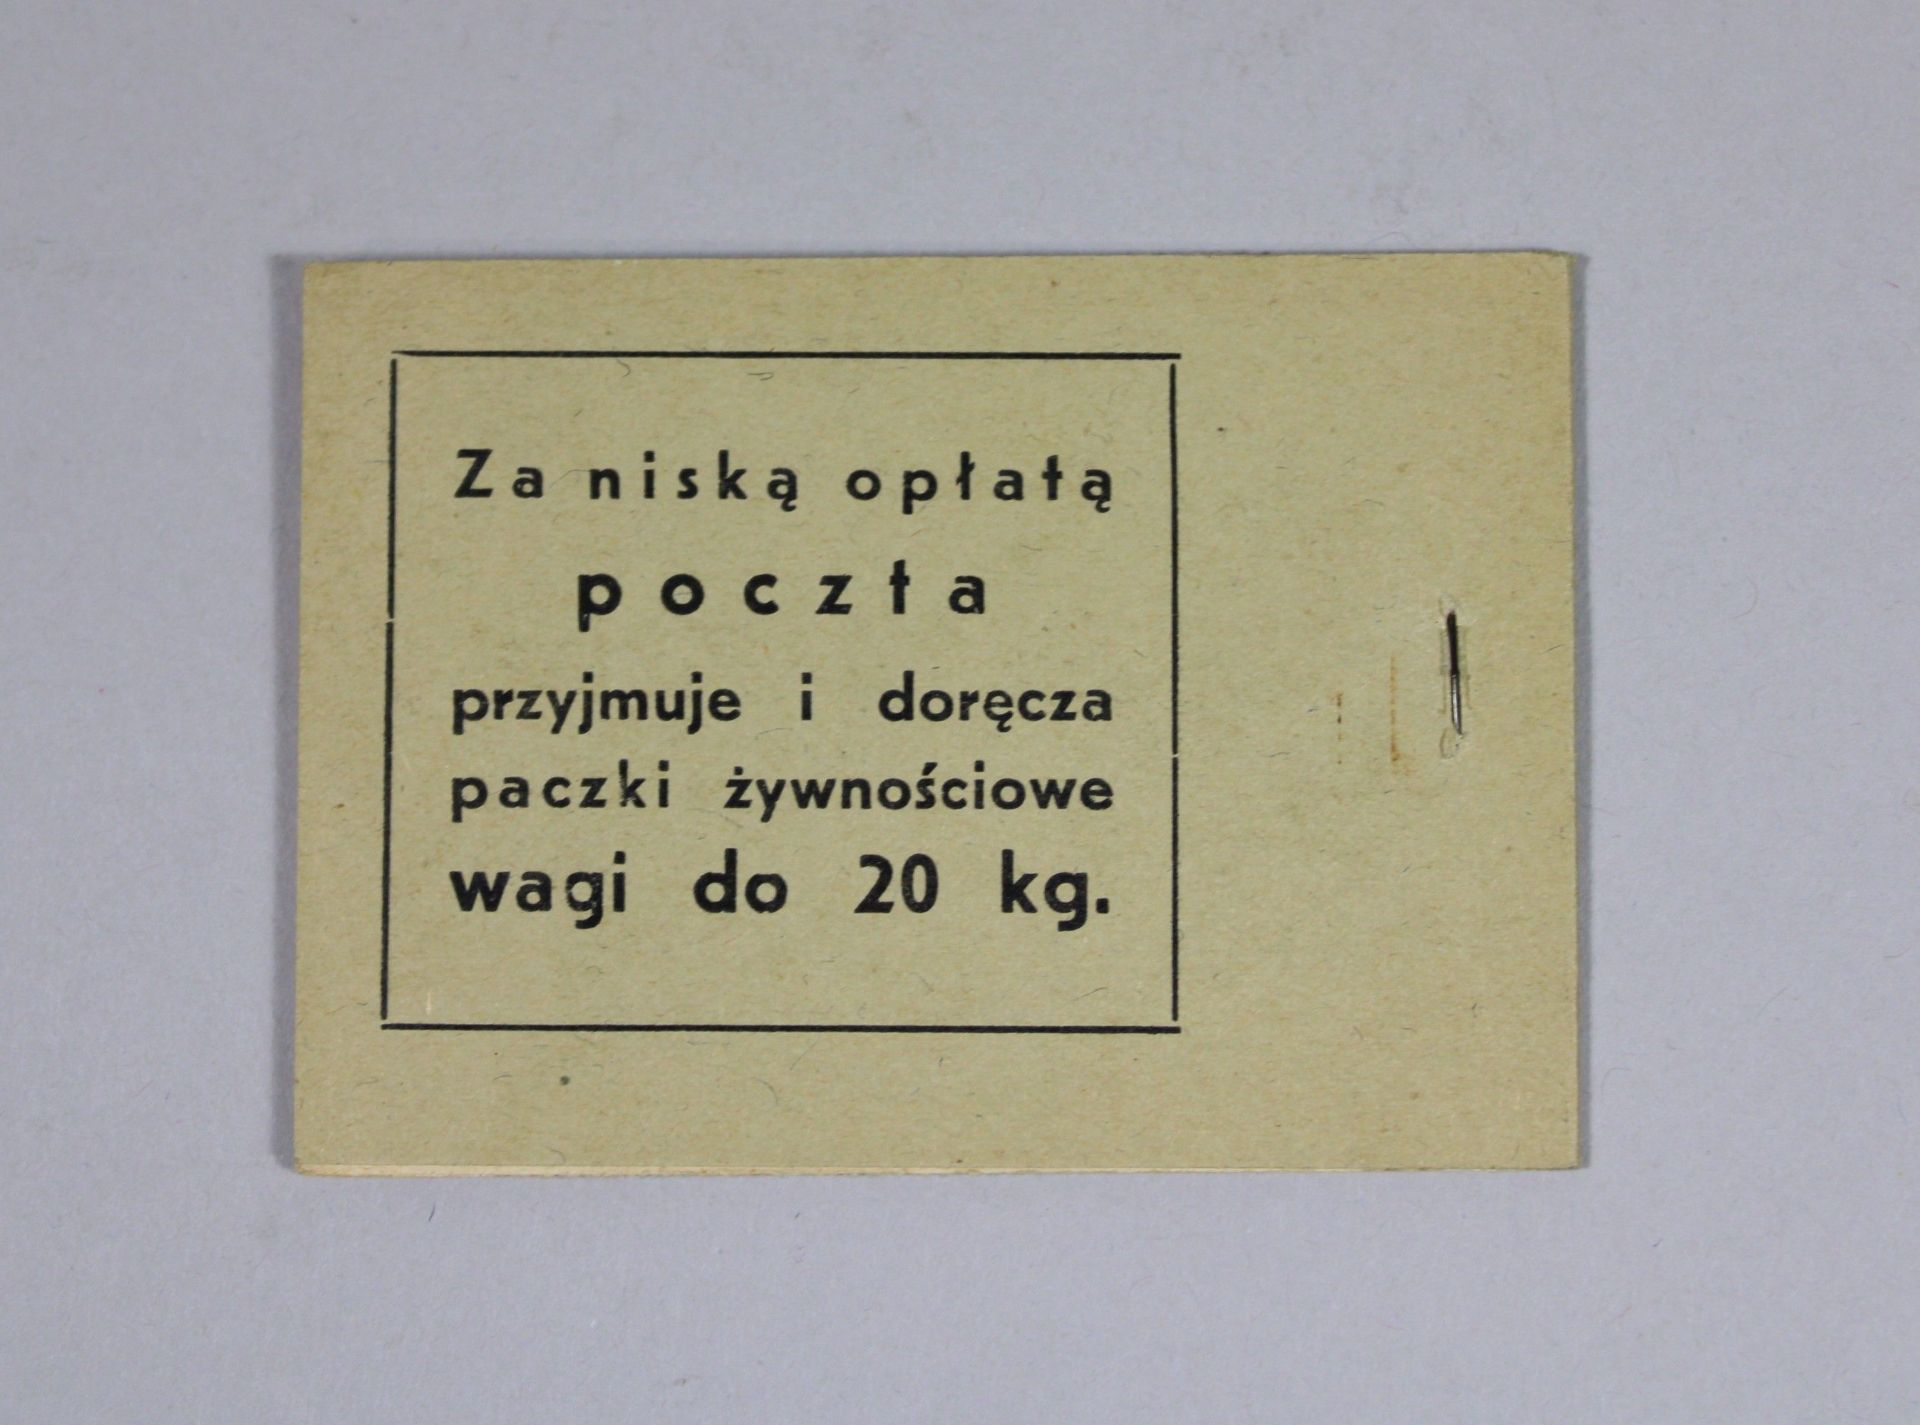 16 Briefmarkenhefte, Polen, 1938, vollständig, guter Zustand. - Bild 2 aus 3